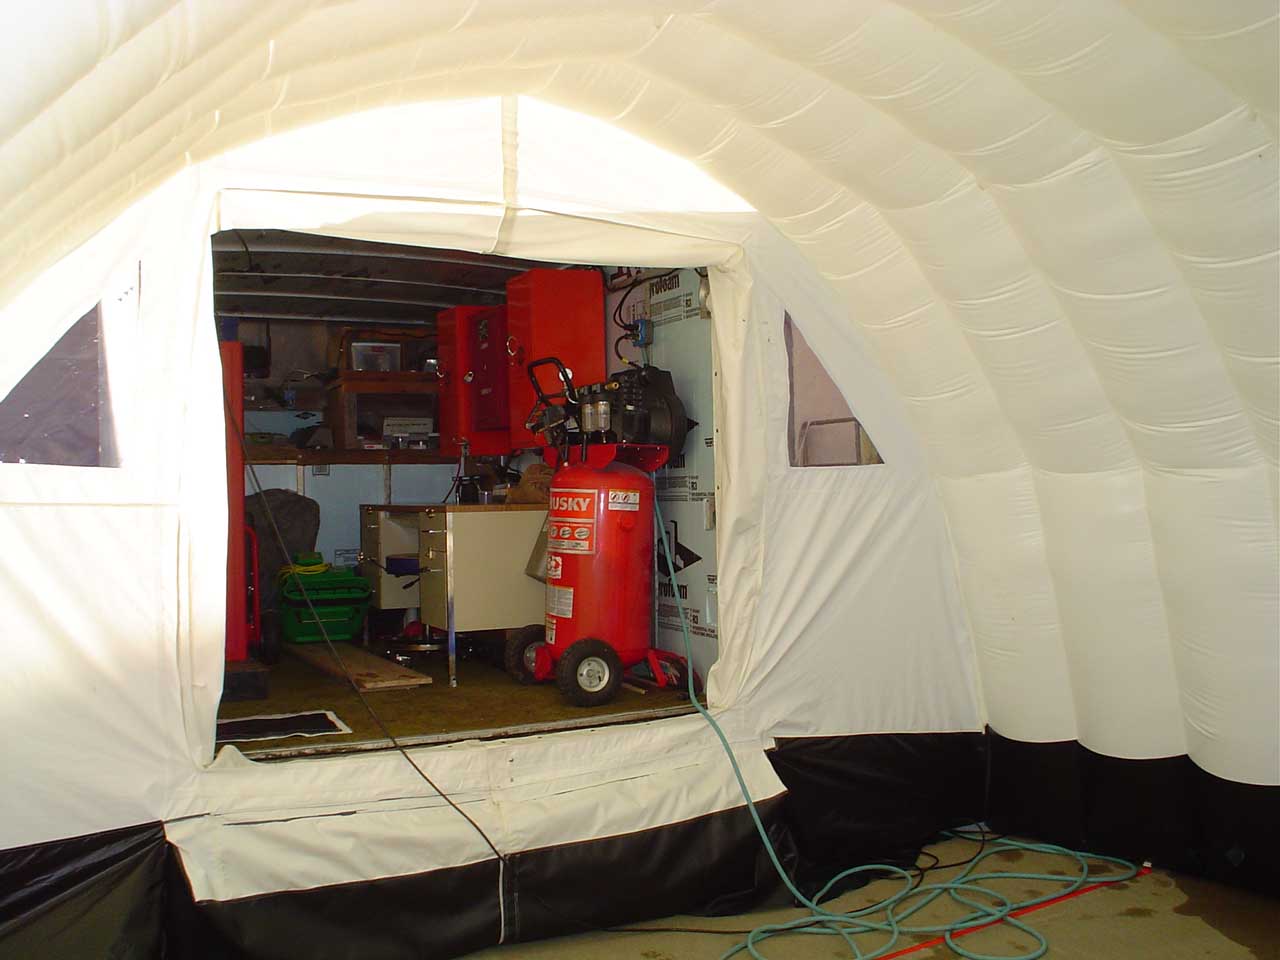 Inflatable shelter costom door inside view